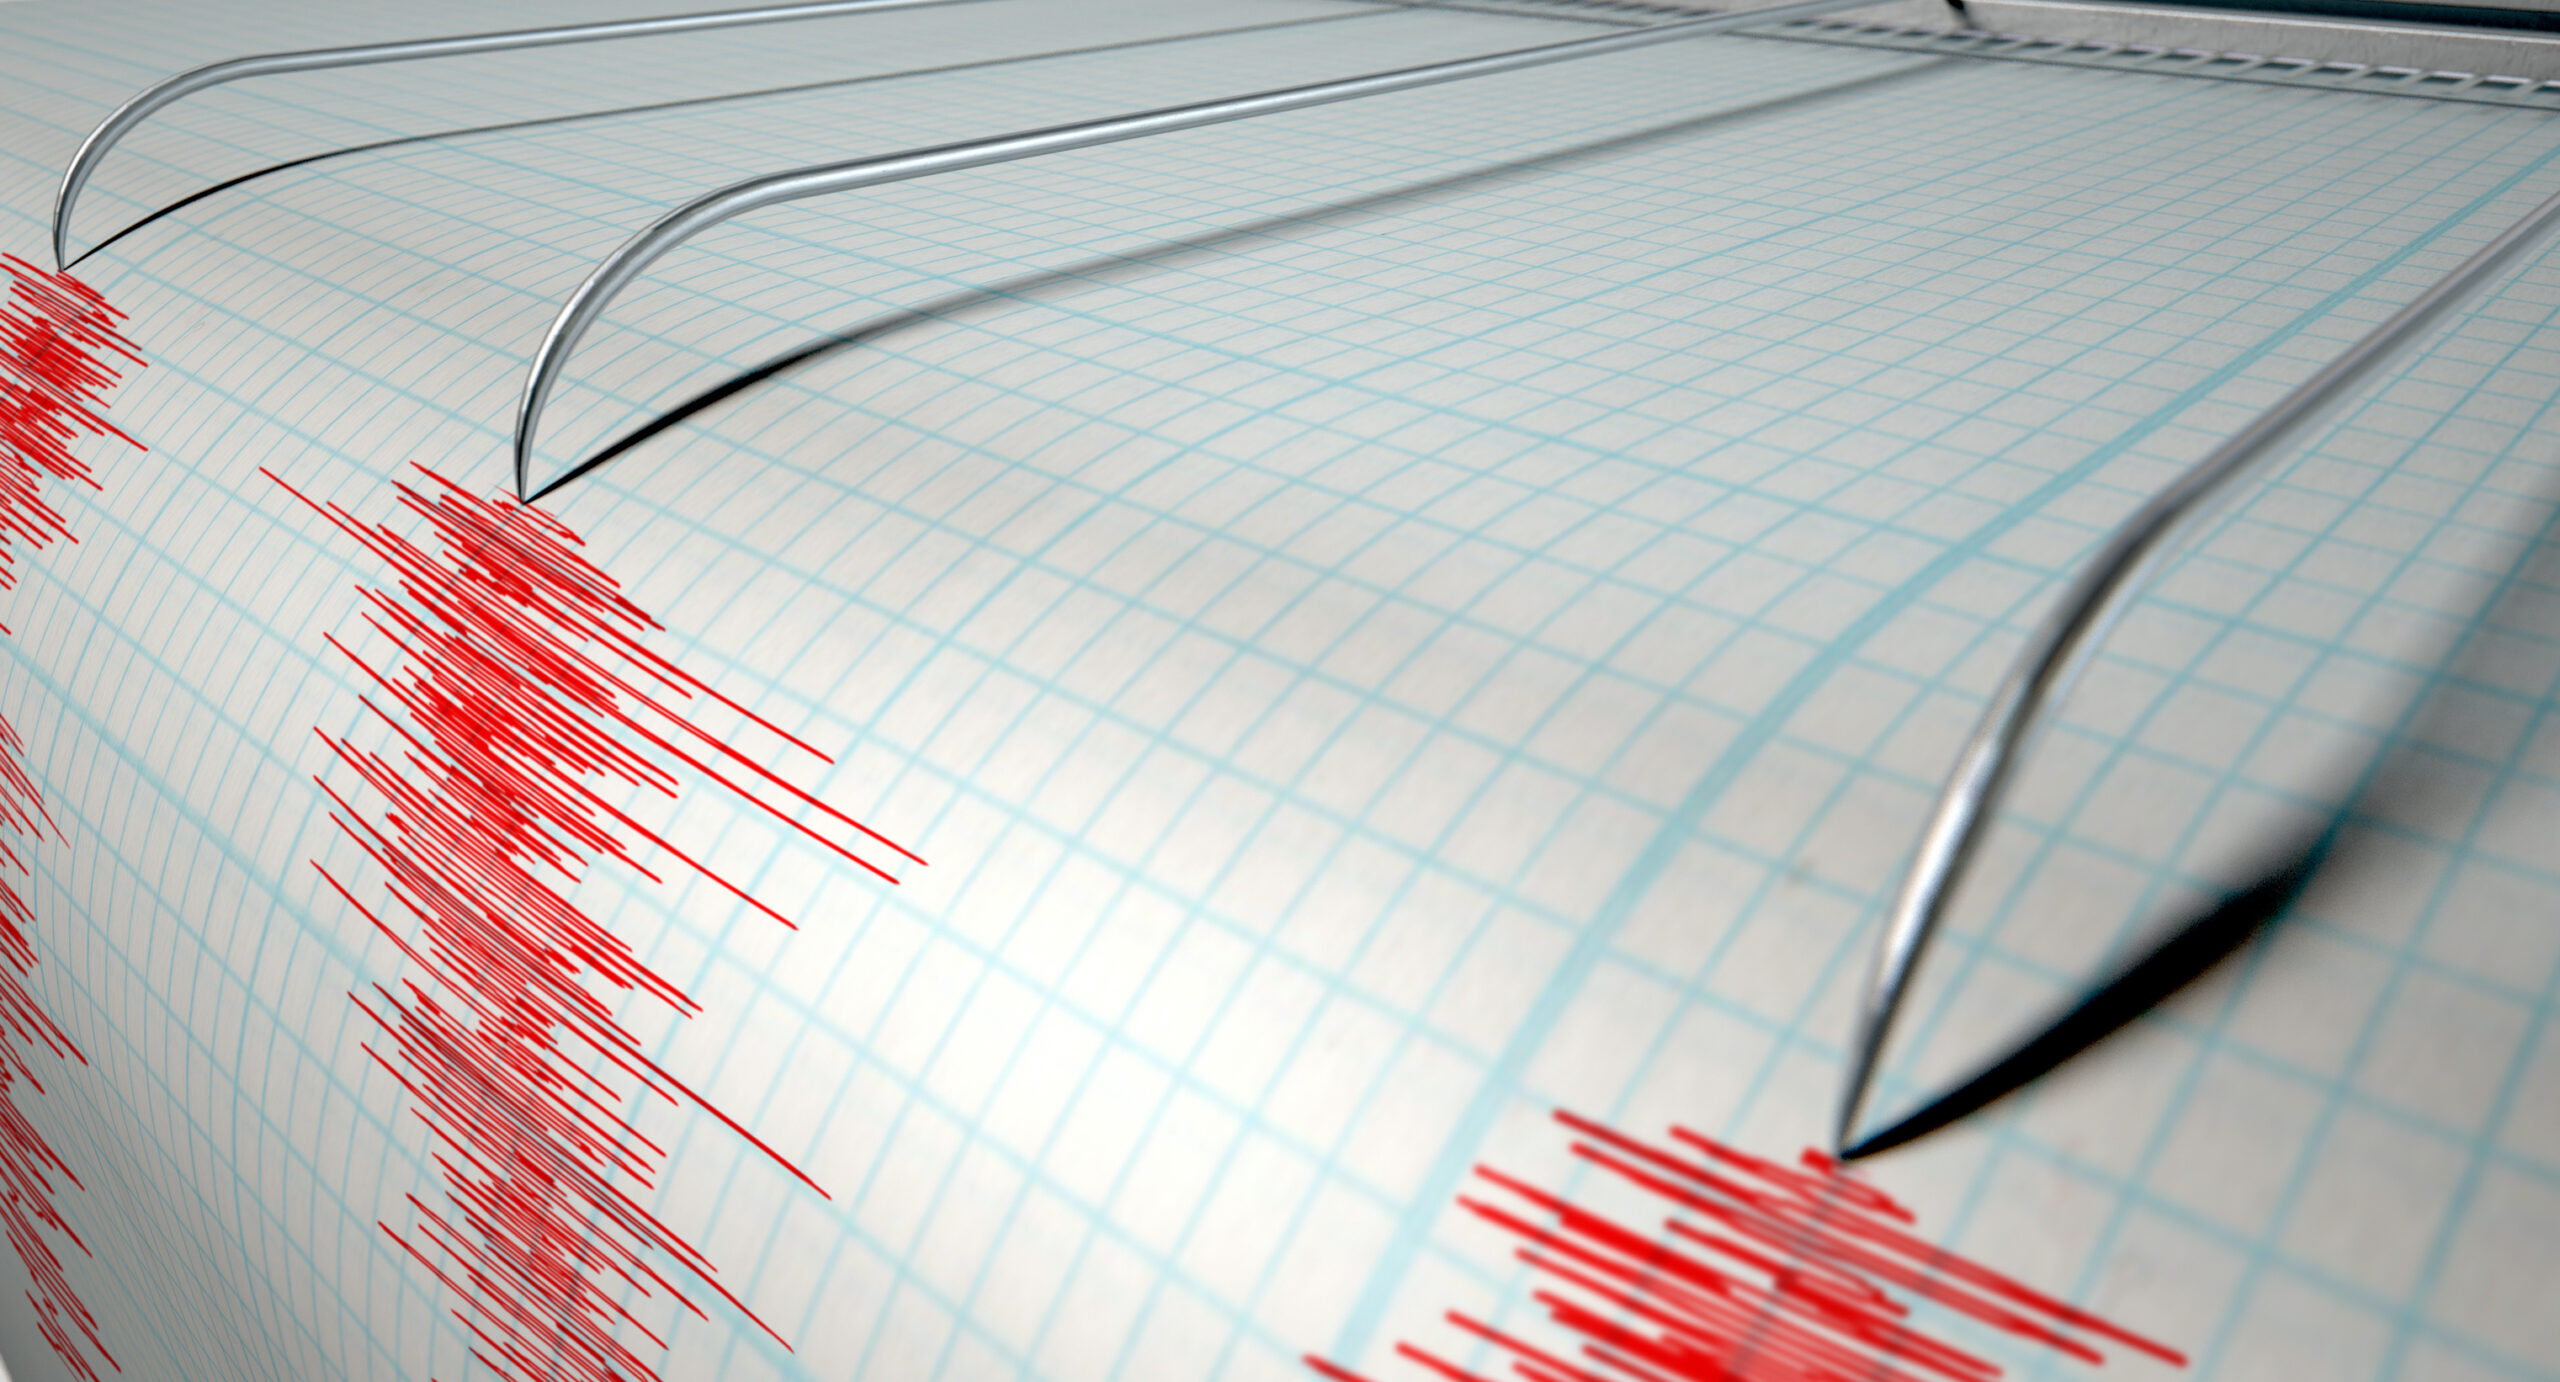 Nou cutremur puternic în Turcia. Zonele afectate de seism